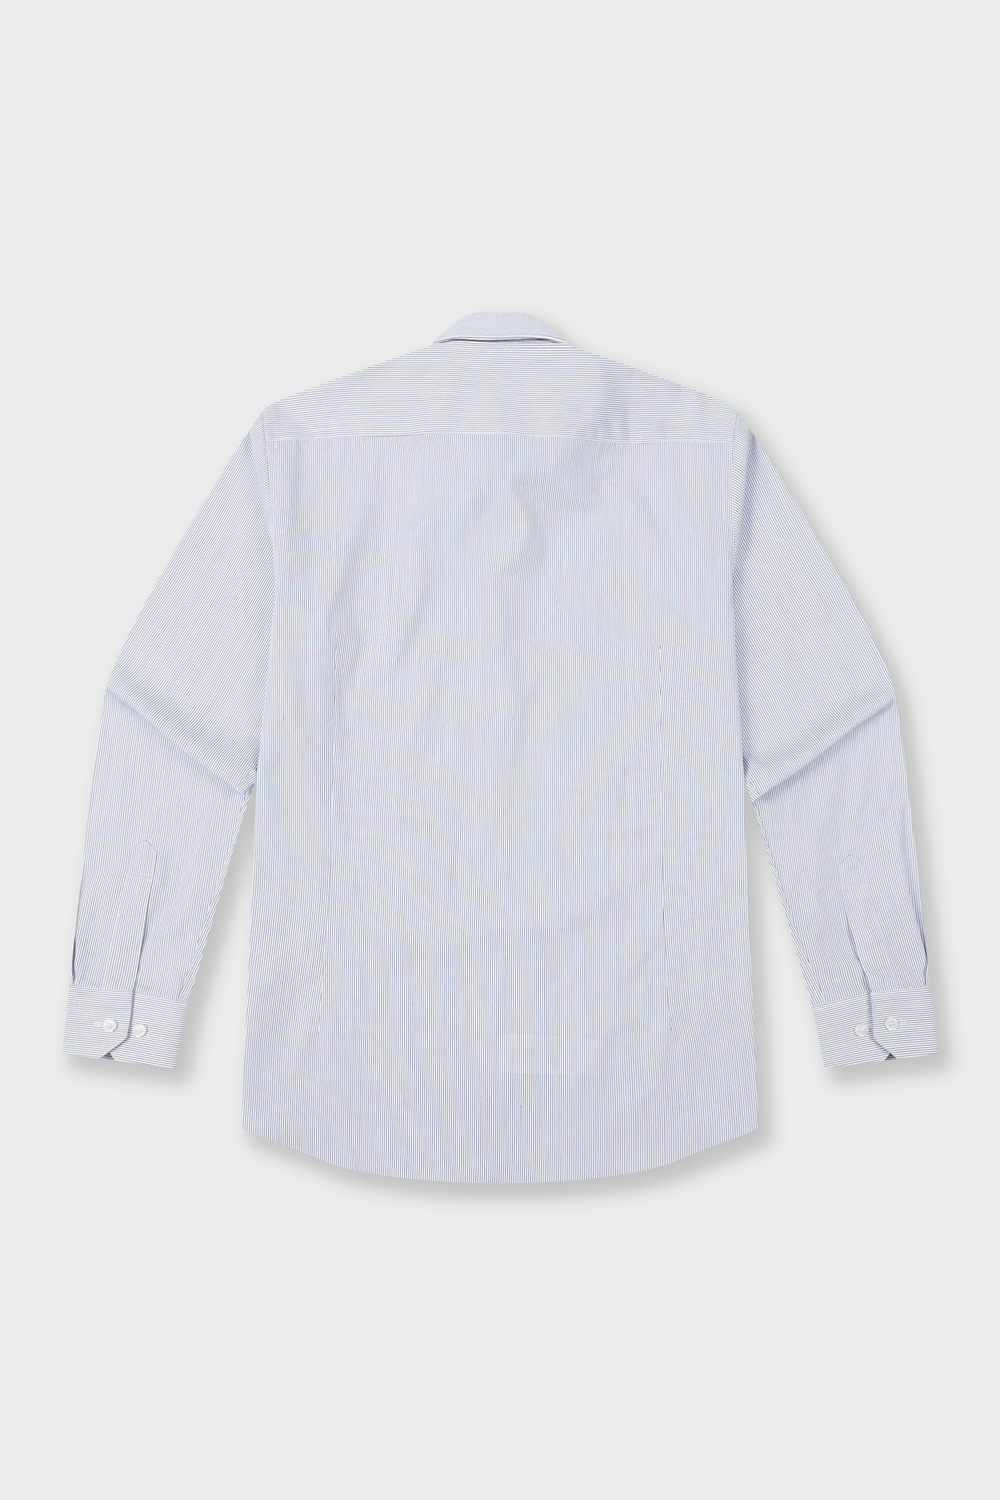 [공식스토어] 핀스트라이프 슬림핏 폴리혼방 셔츠 네이비 YJ4SBS160NY